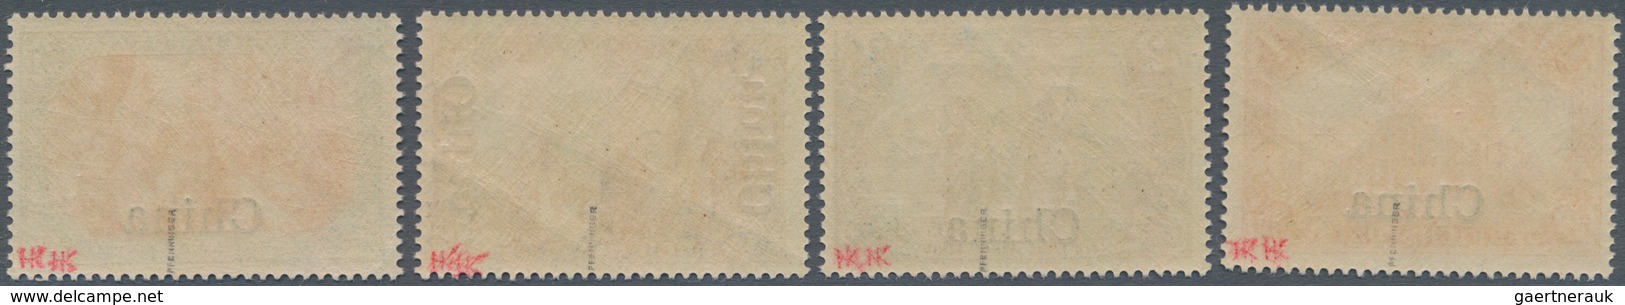 Deutsche Post in China: 1901. 3 Pfg braun bis 5 Mk grünschwarz/bräunlichkarmin. Die amtlich nicht au